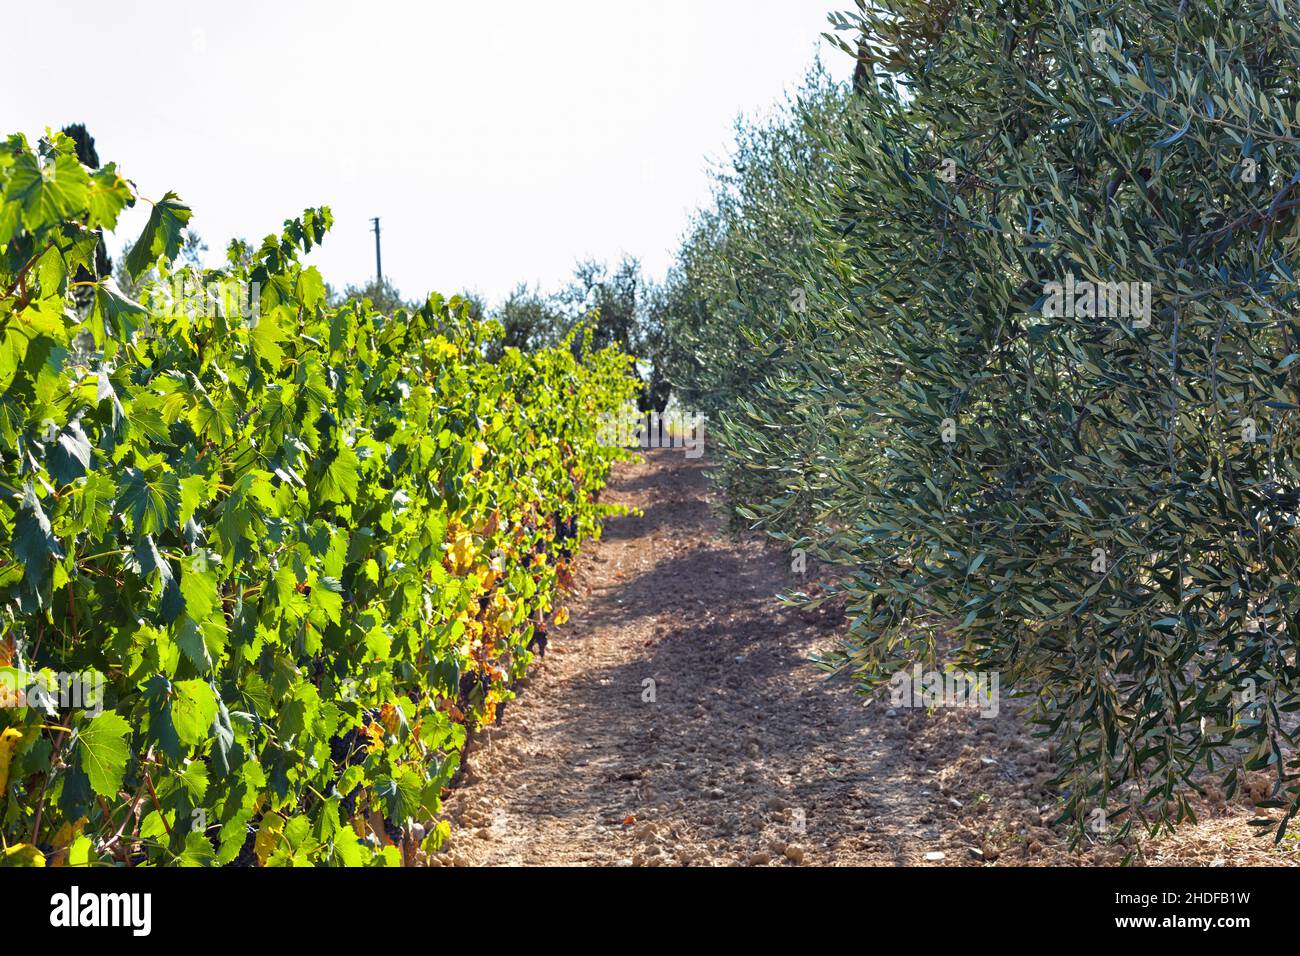 vineyard, tuscany, olive grove, vineyards, tuscanies, olive groves Stock Photo